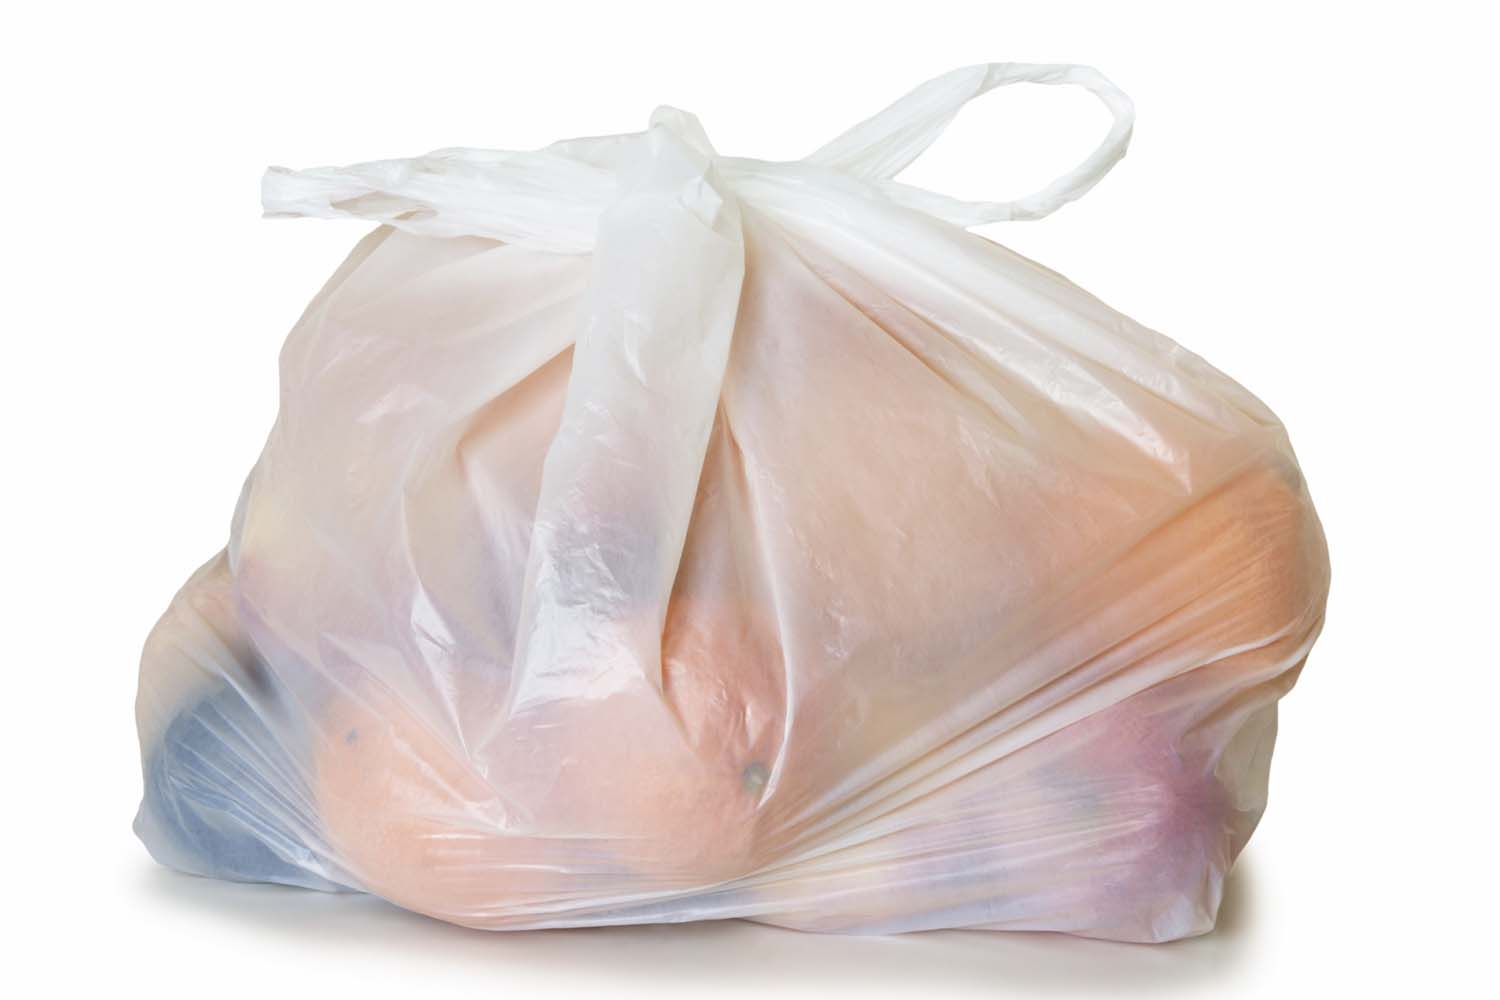 Sacchetti di plastica: sanzioni rimandate al 2014